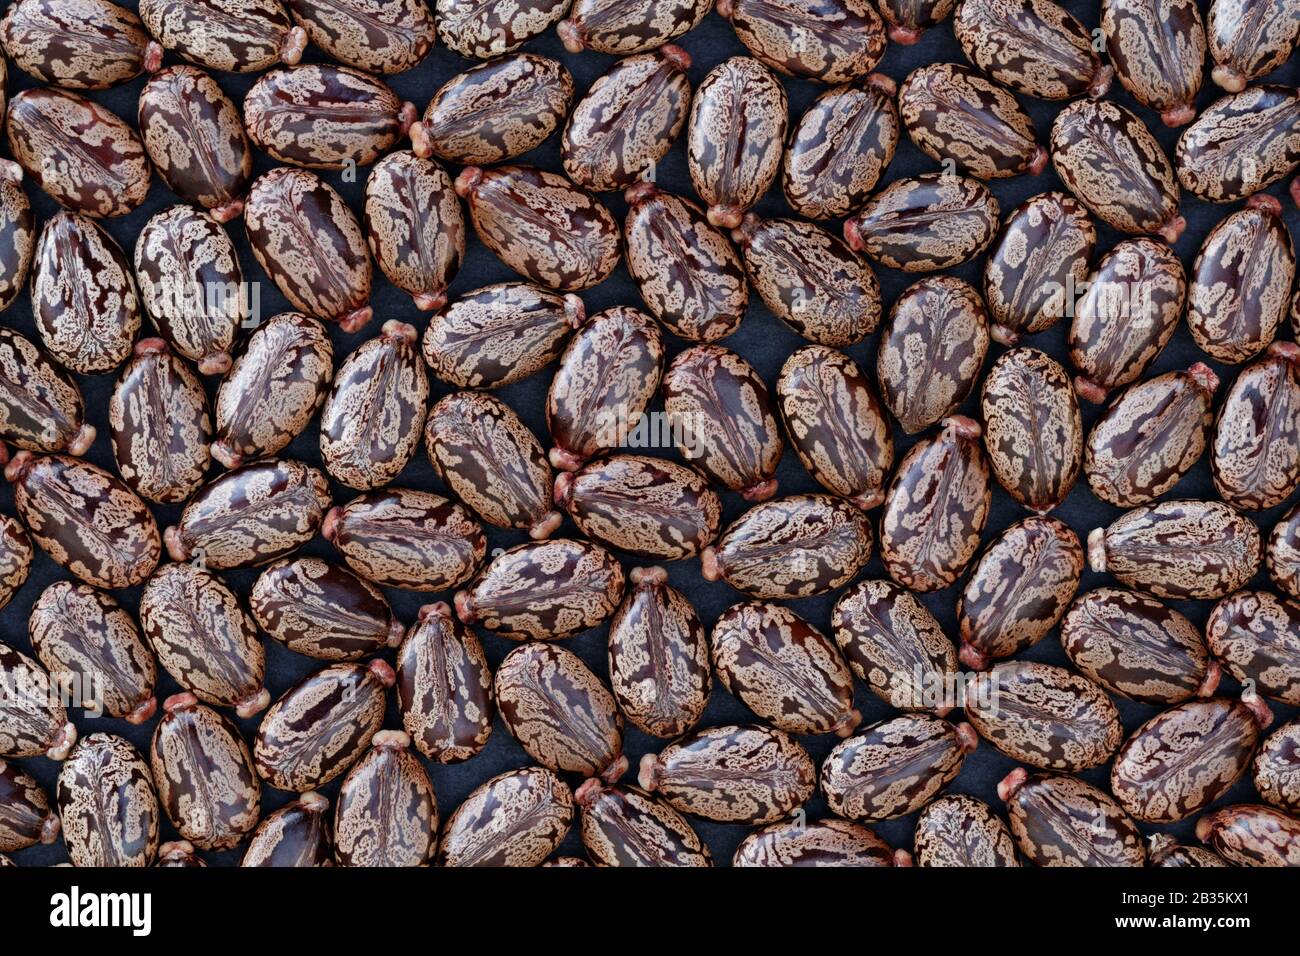 Castor Beans (Ricinus communis) - concetto naturale: Concetto naturale con un accumulo di fagioli di ricino (ricino communis) su sfondo scuro Foto Stock